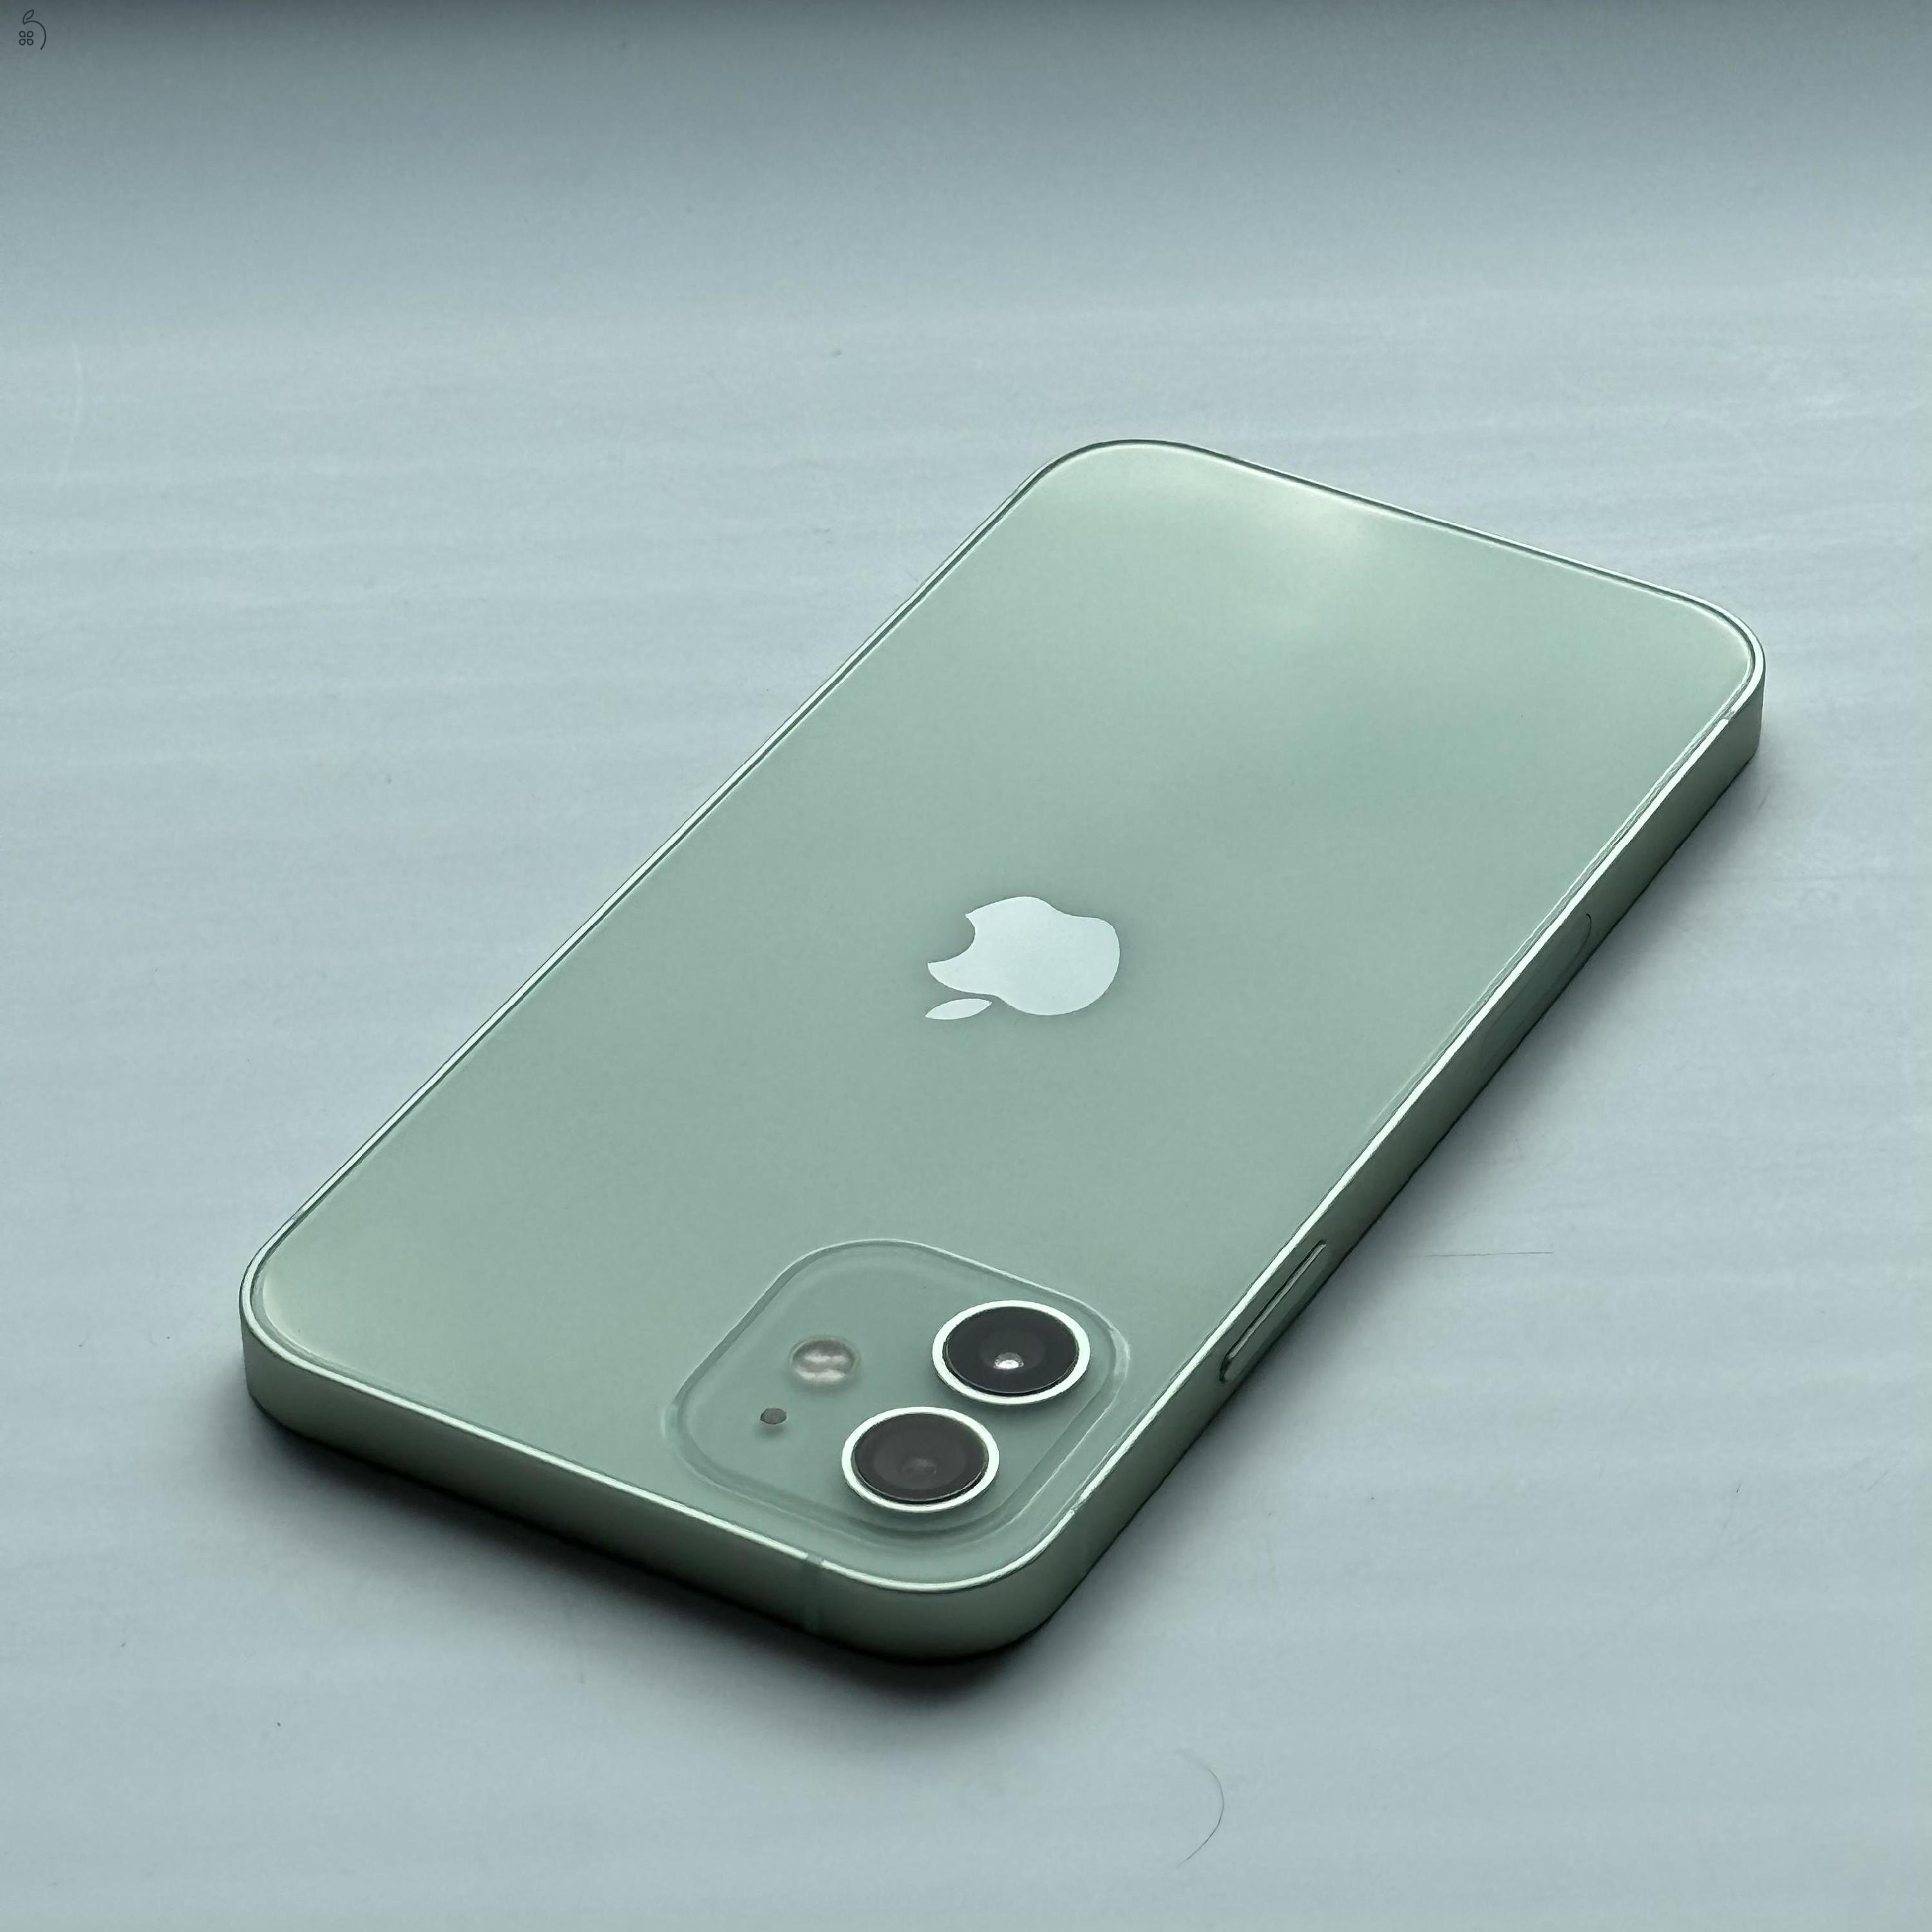 HIBÁTLAN iPhone 12 64GB Green - 1 ÉV GARANCIA, Kártyafüggetlen, 100% Akkumulátor